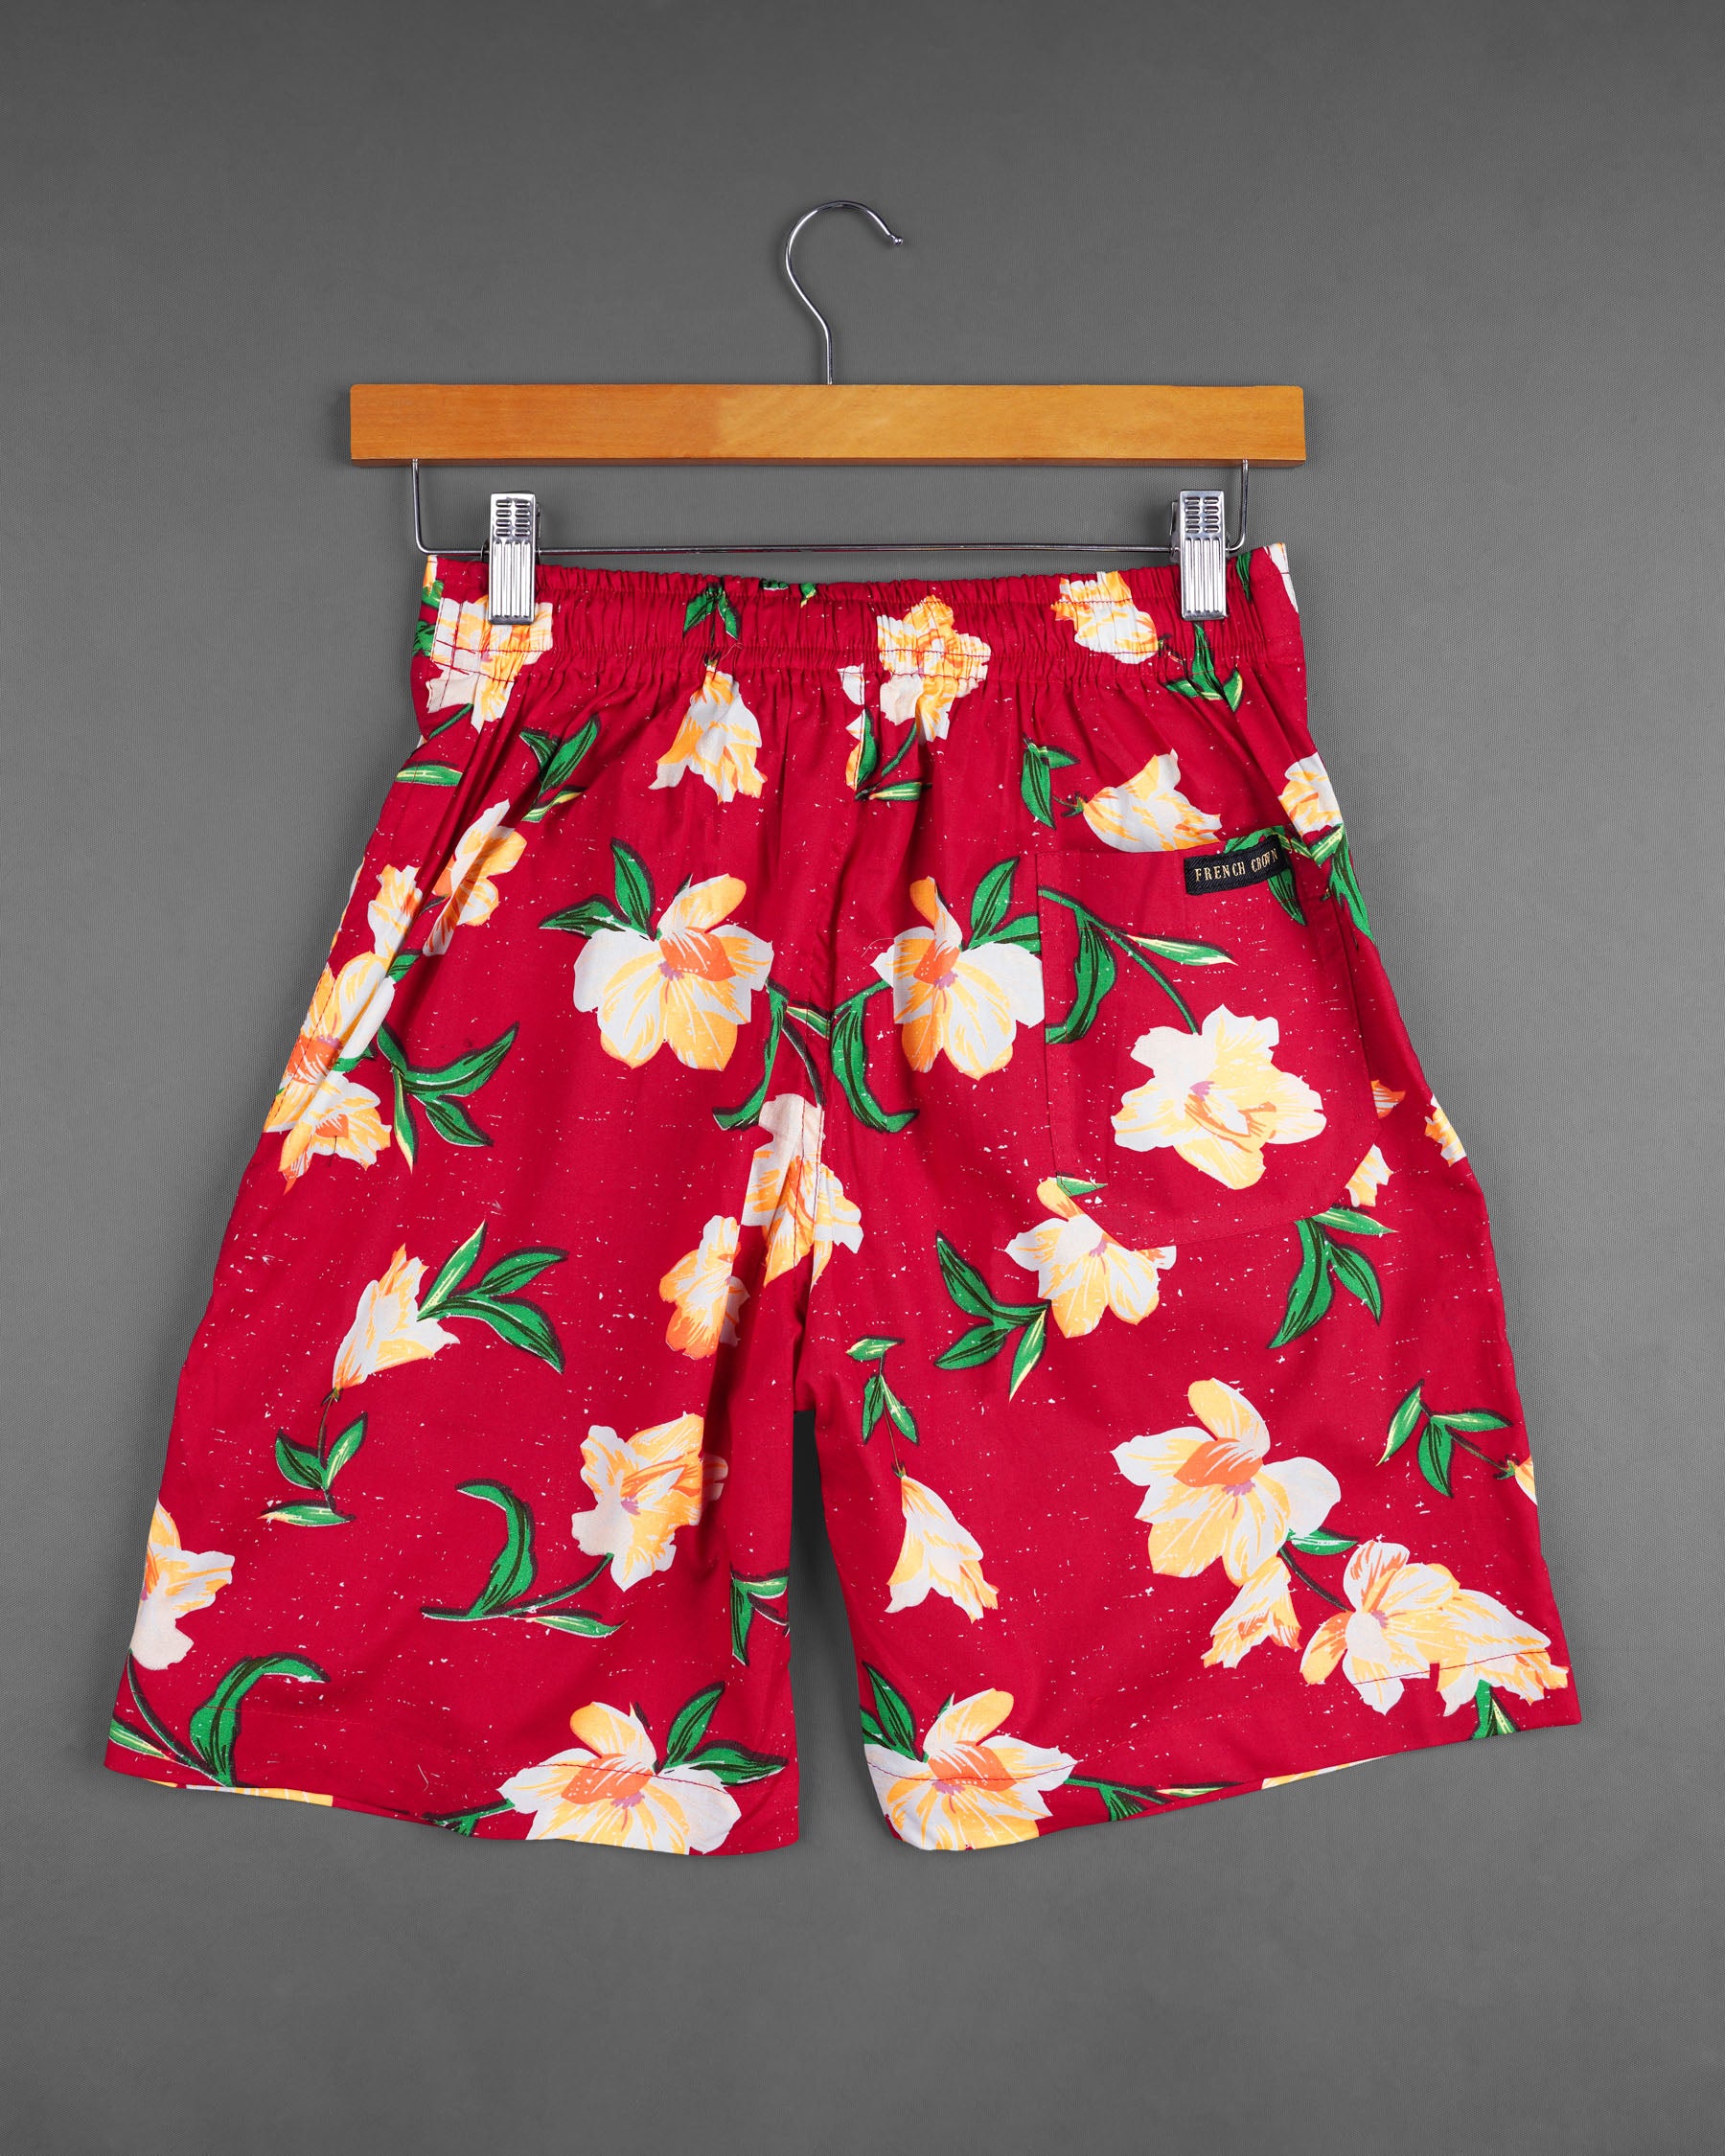 Crimson Red Floral Printed Premium Cotton Designer Shorts SR159-28, SR159-30, SR159-32, SR159-34, SR159-36, SR159-38, SR159-40, SR159-42, SR159-44